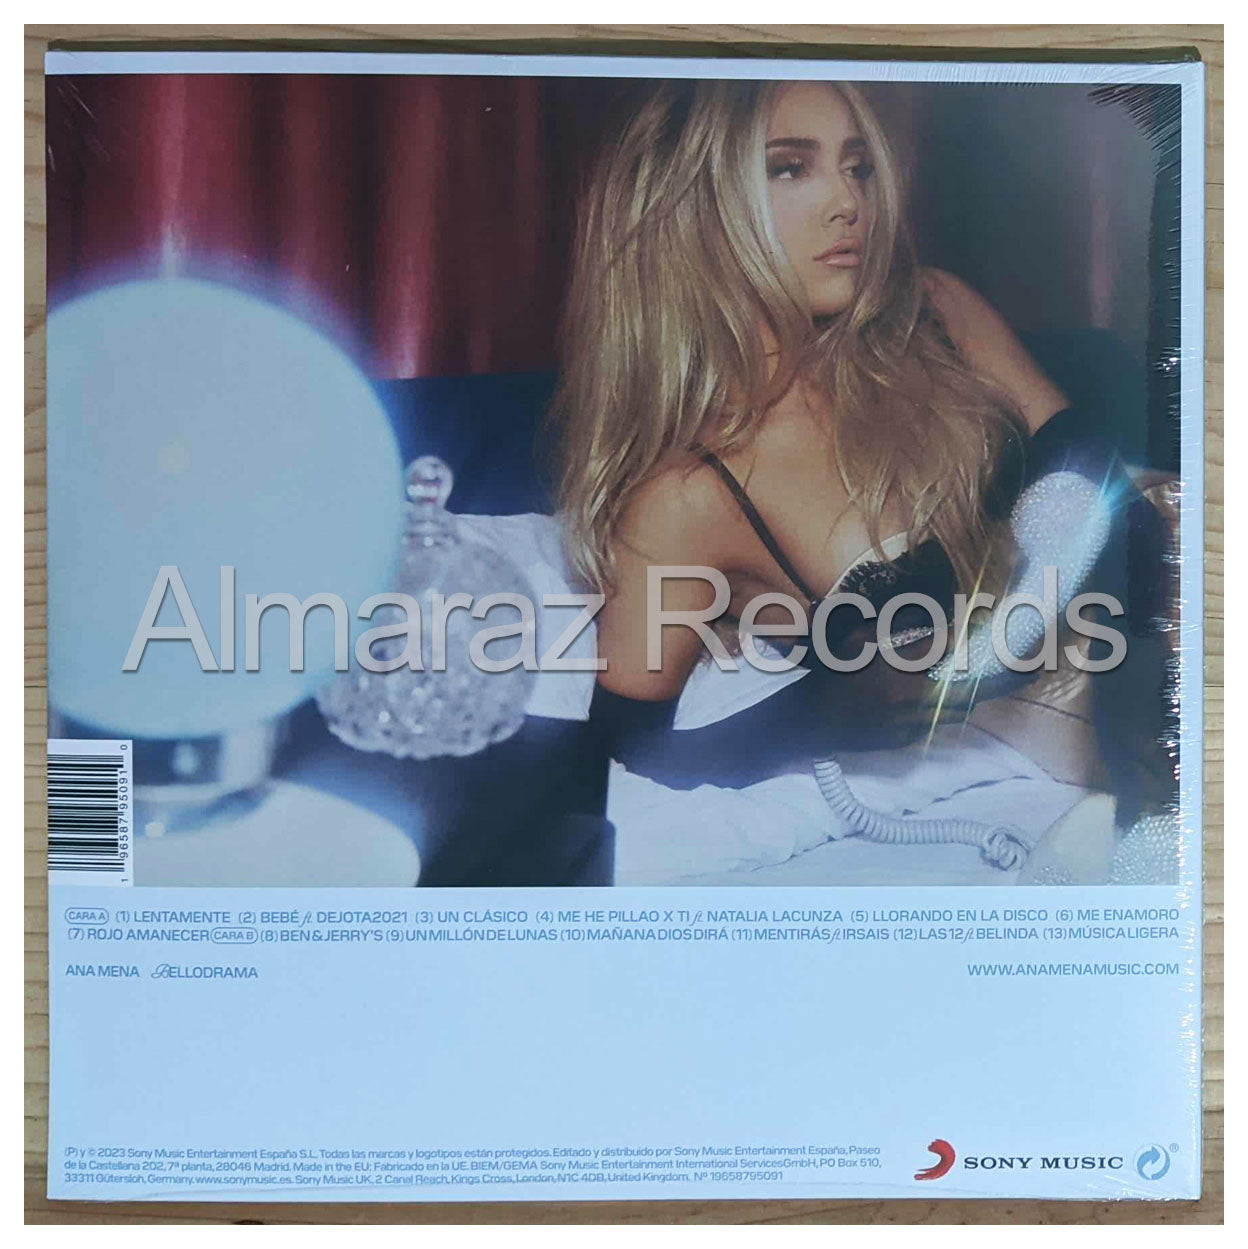 Ana Mena Bellodrama Vinyl LP